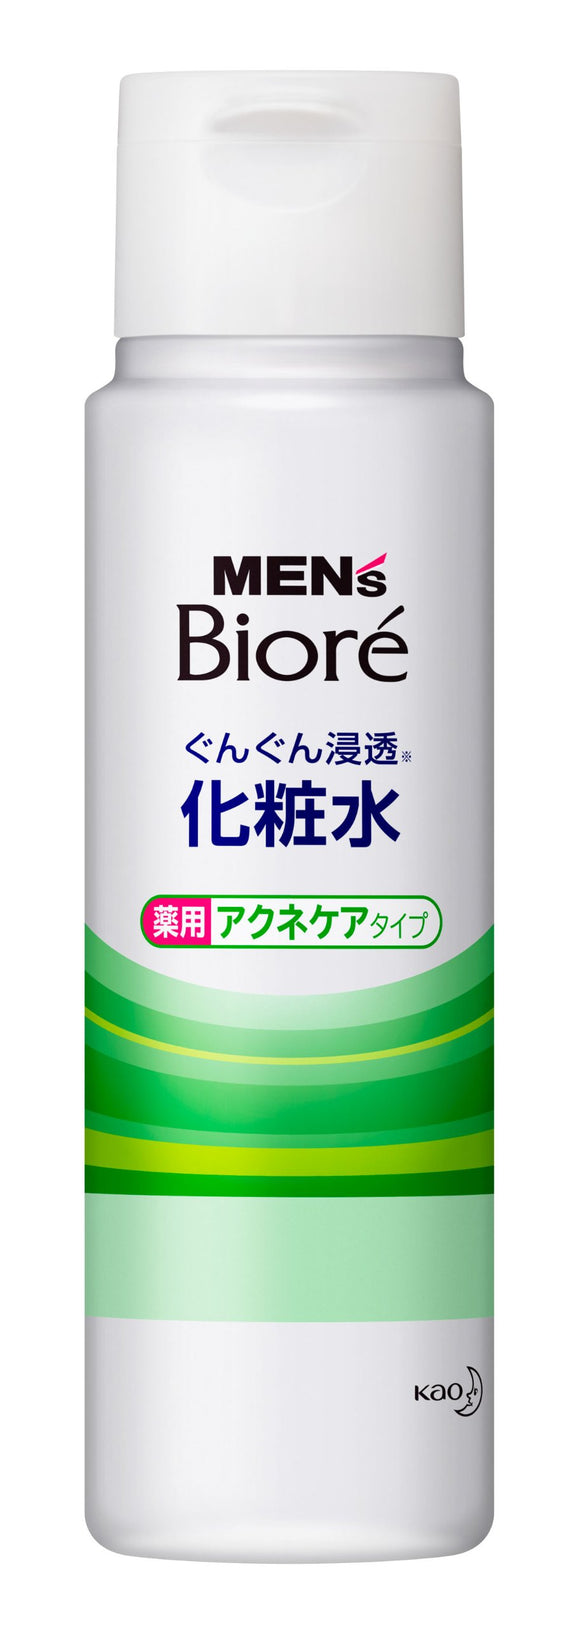 Men's Biore penetrating lotion medicated acne care type 180ml [Quasi drug]